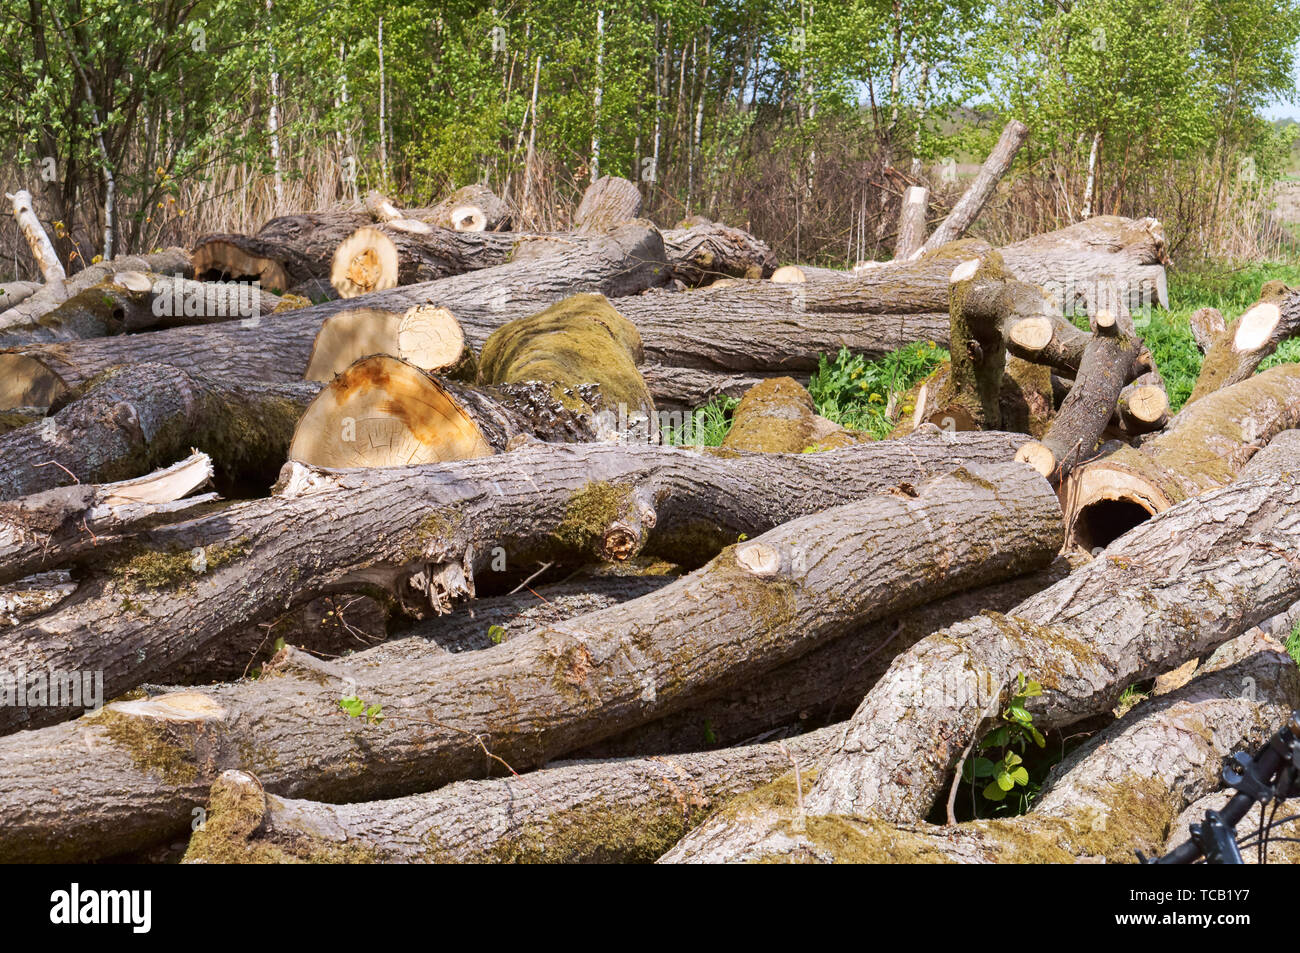 felled trees, trunks of felled trees Stock Photo